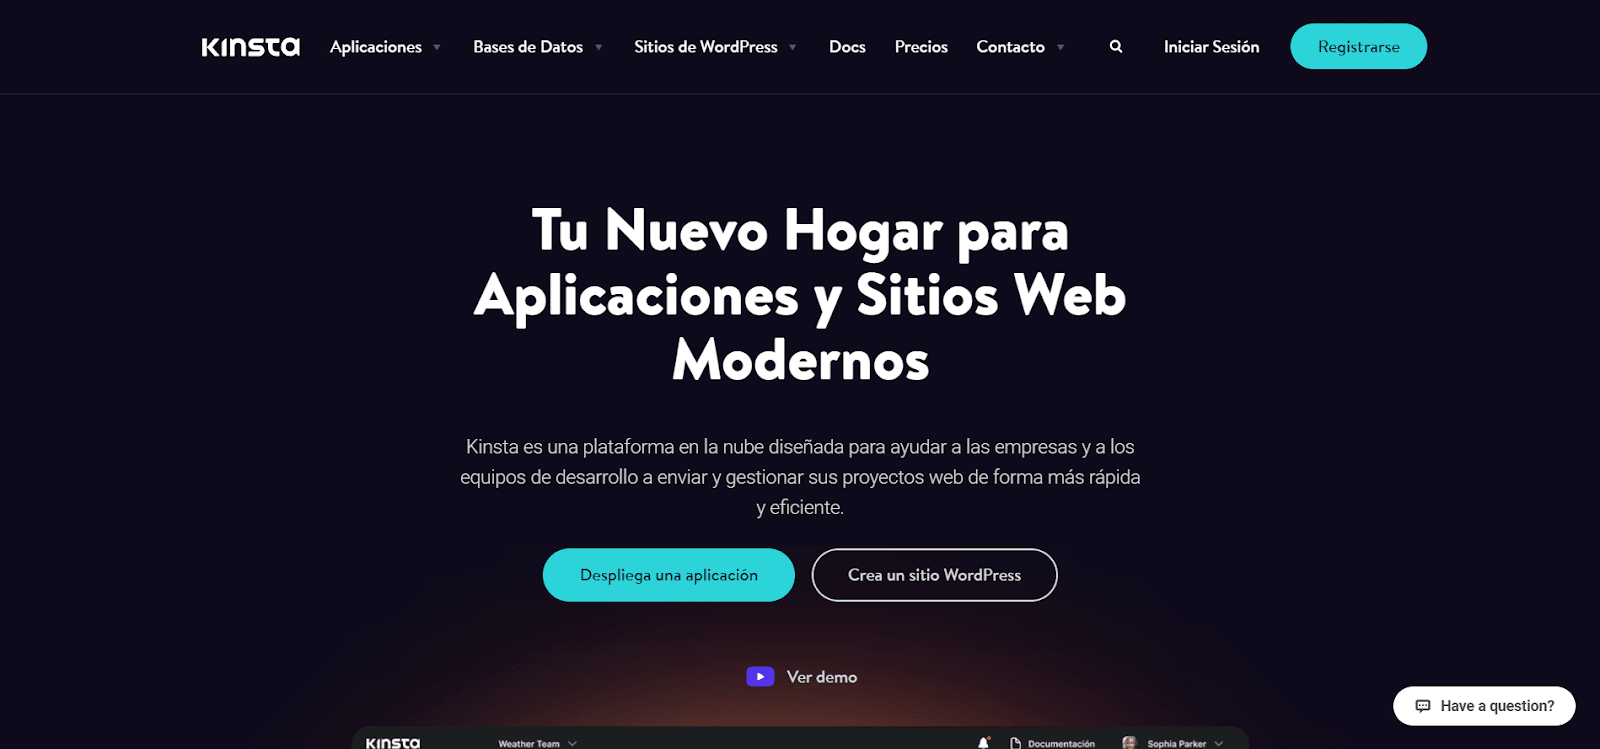 La home page di Kinsta in spagnolo.